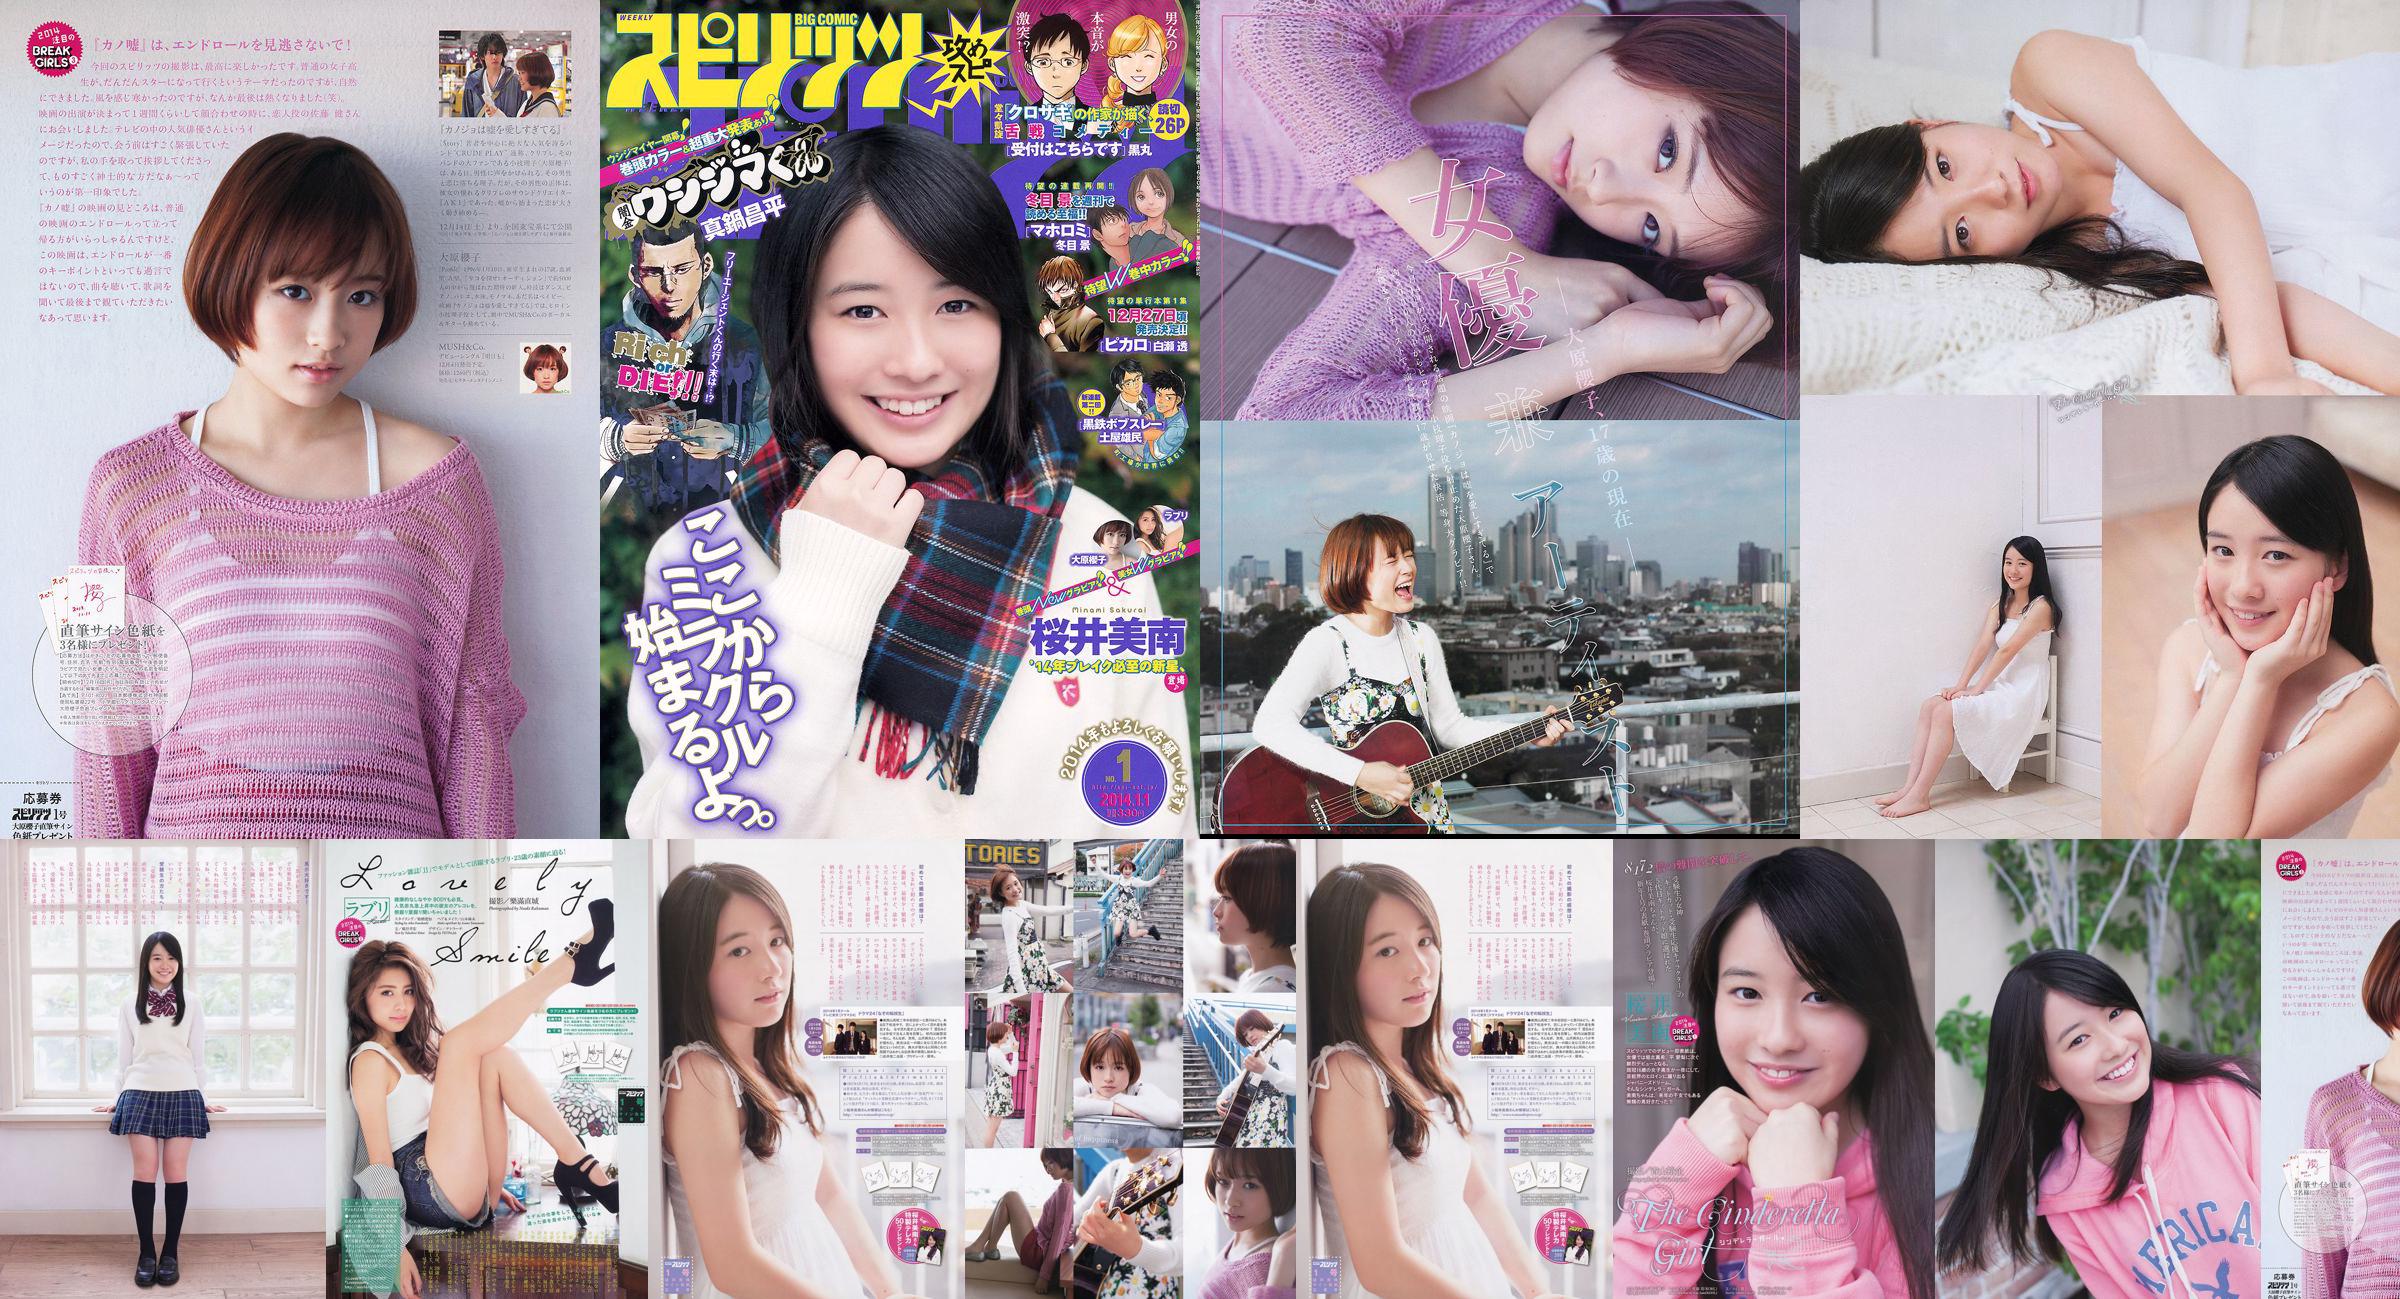 [Grands esprits de la bande dessinée hebdomadaire] Sakurai Minan Ohara Sakurako 2014 Magazine photo n ° 01 No.1c0bad Page 5